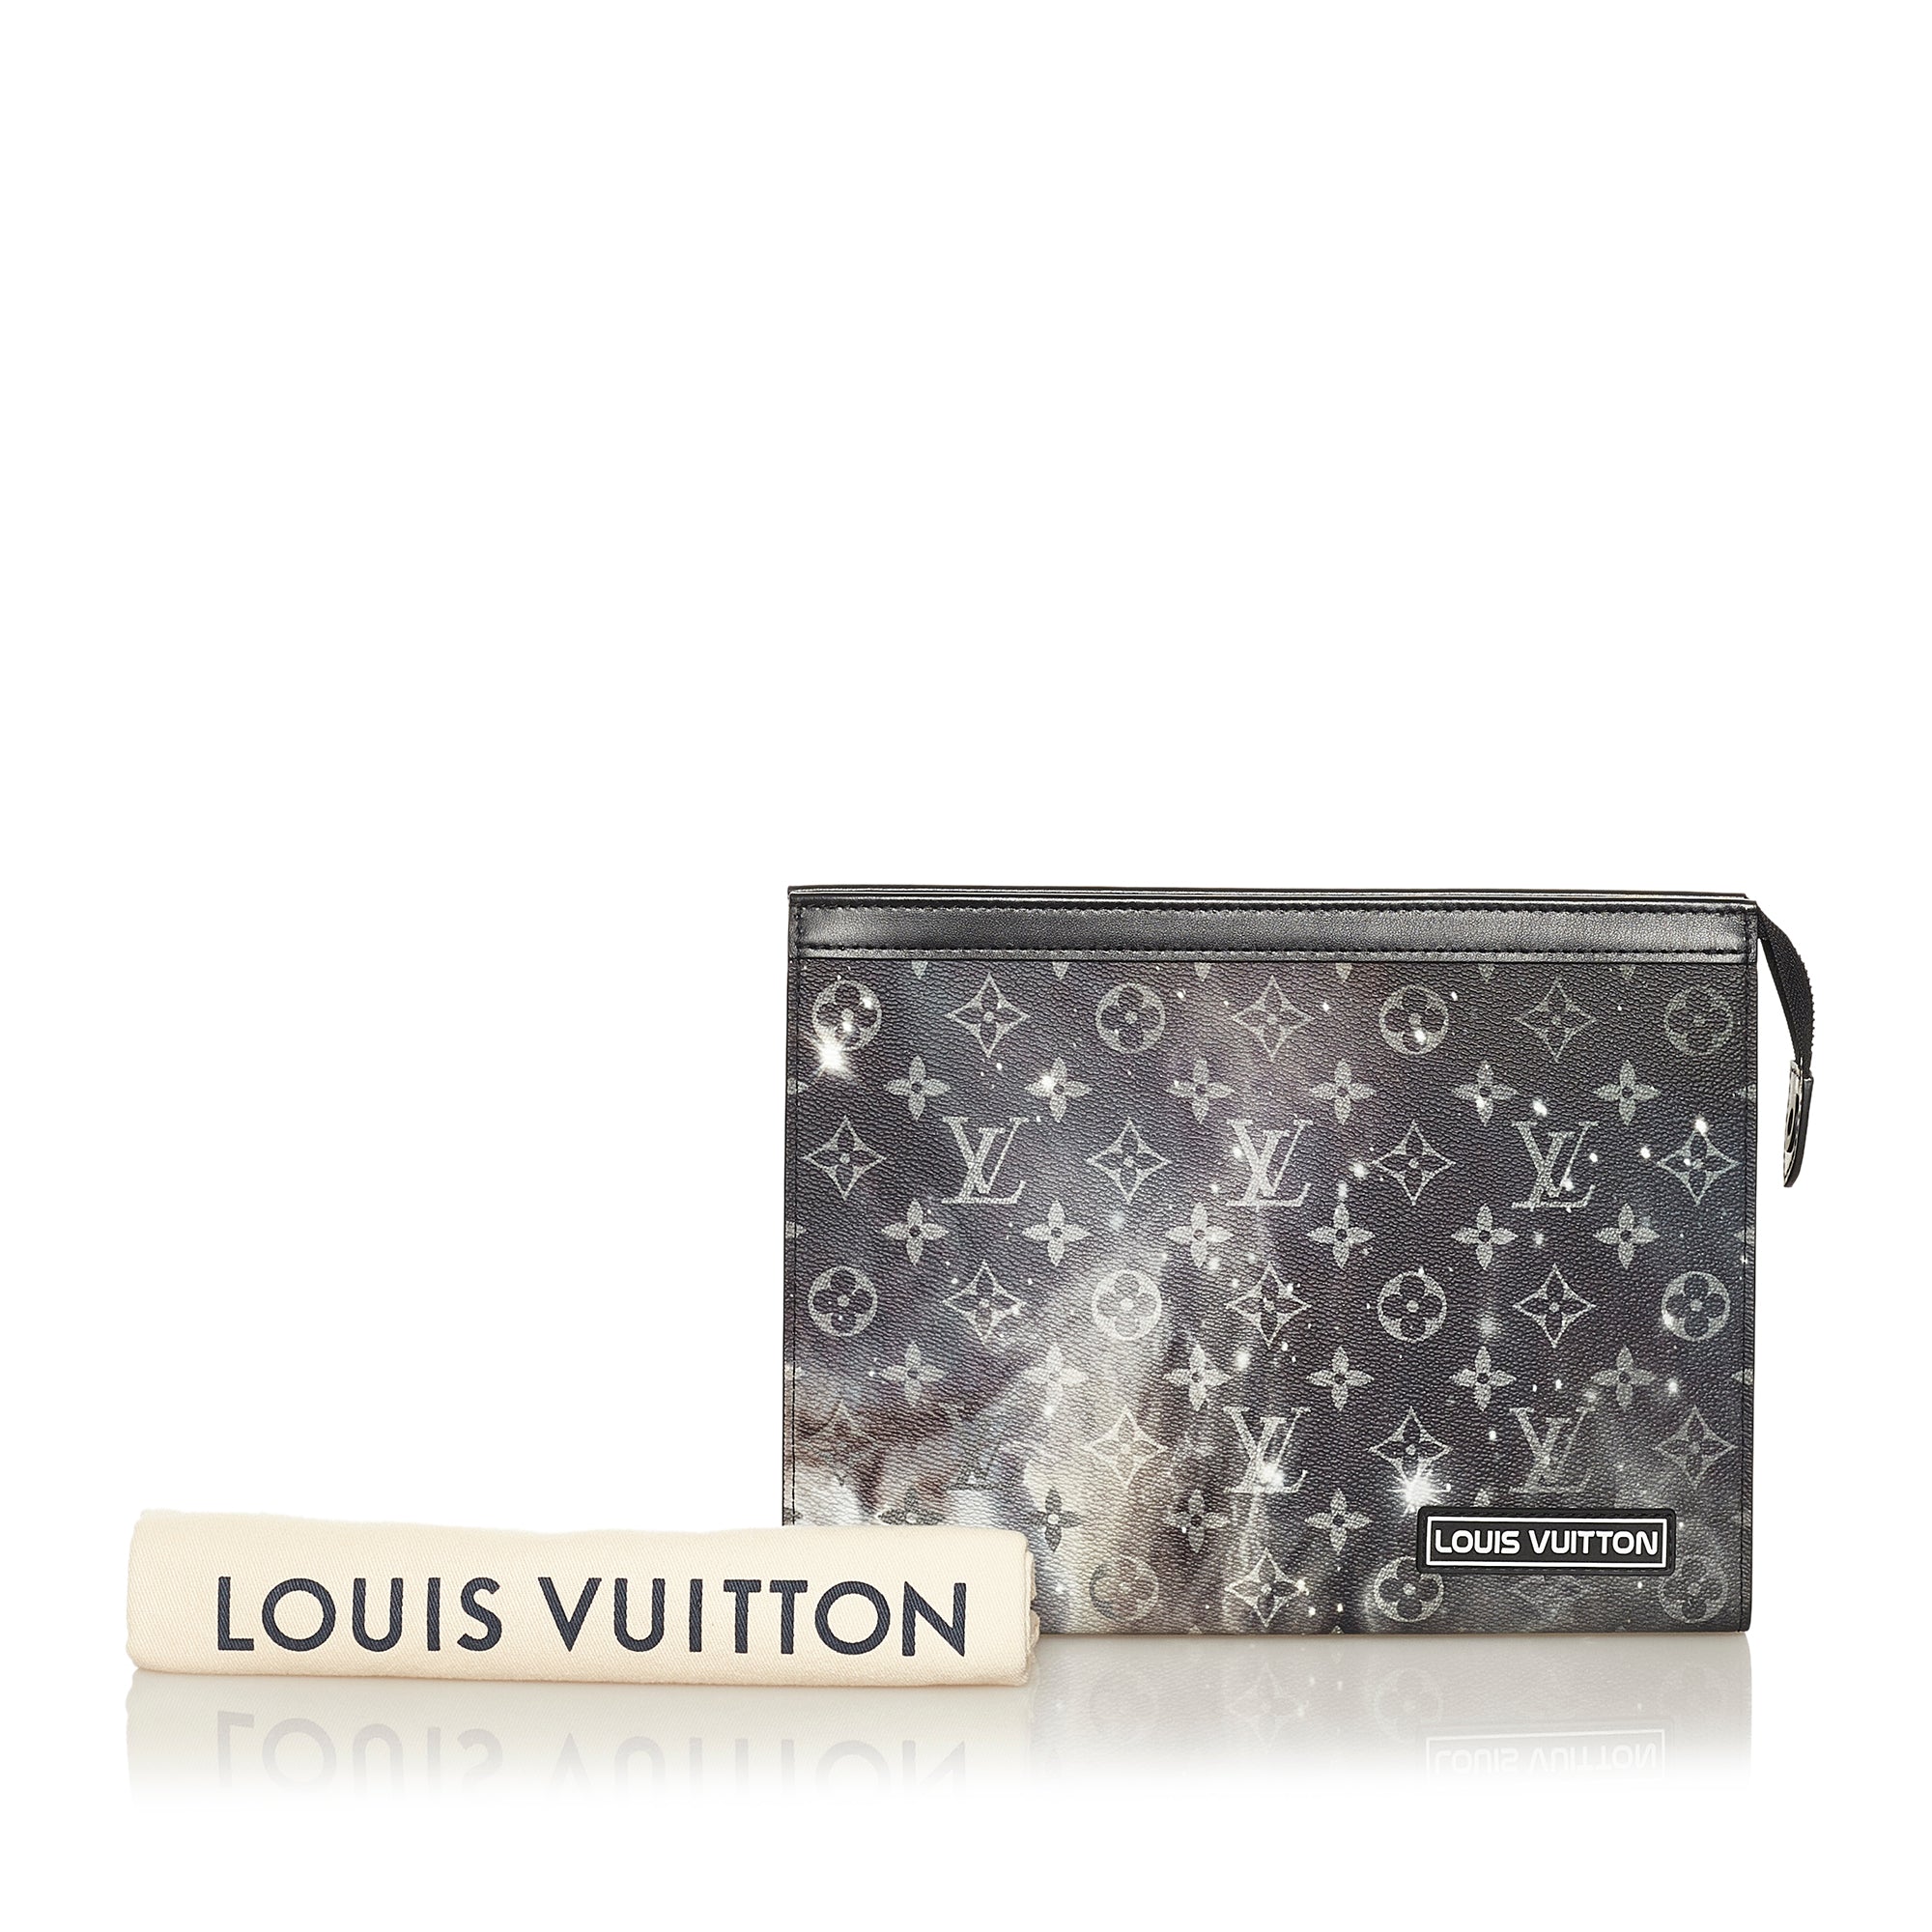 M44448 Louis Vuitton 2019 Monogram Galaxy Pochette Voyage MM